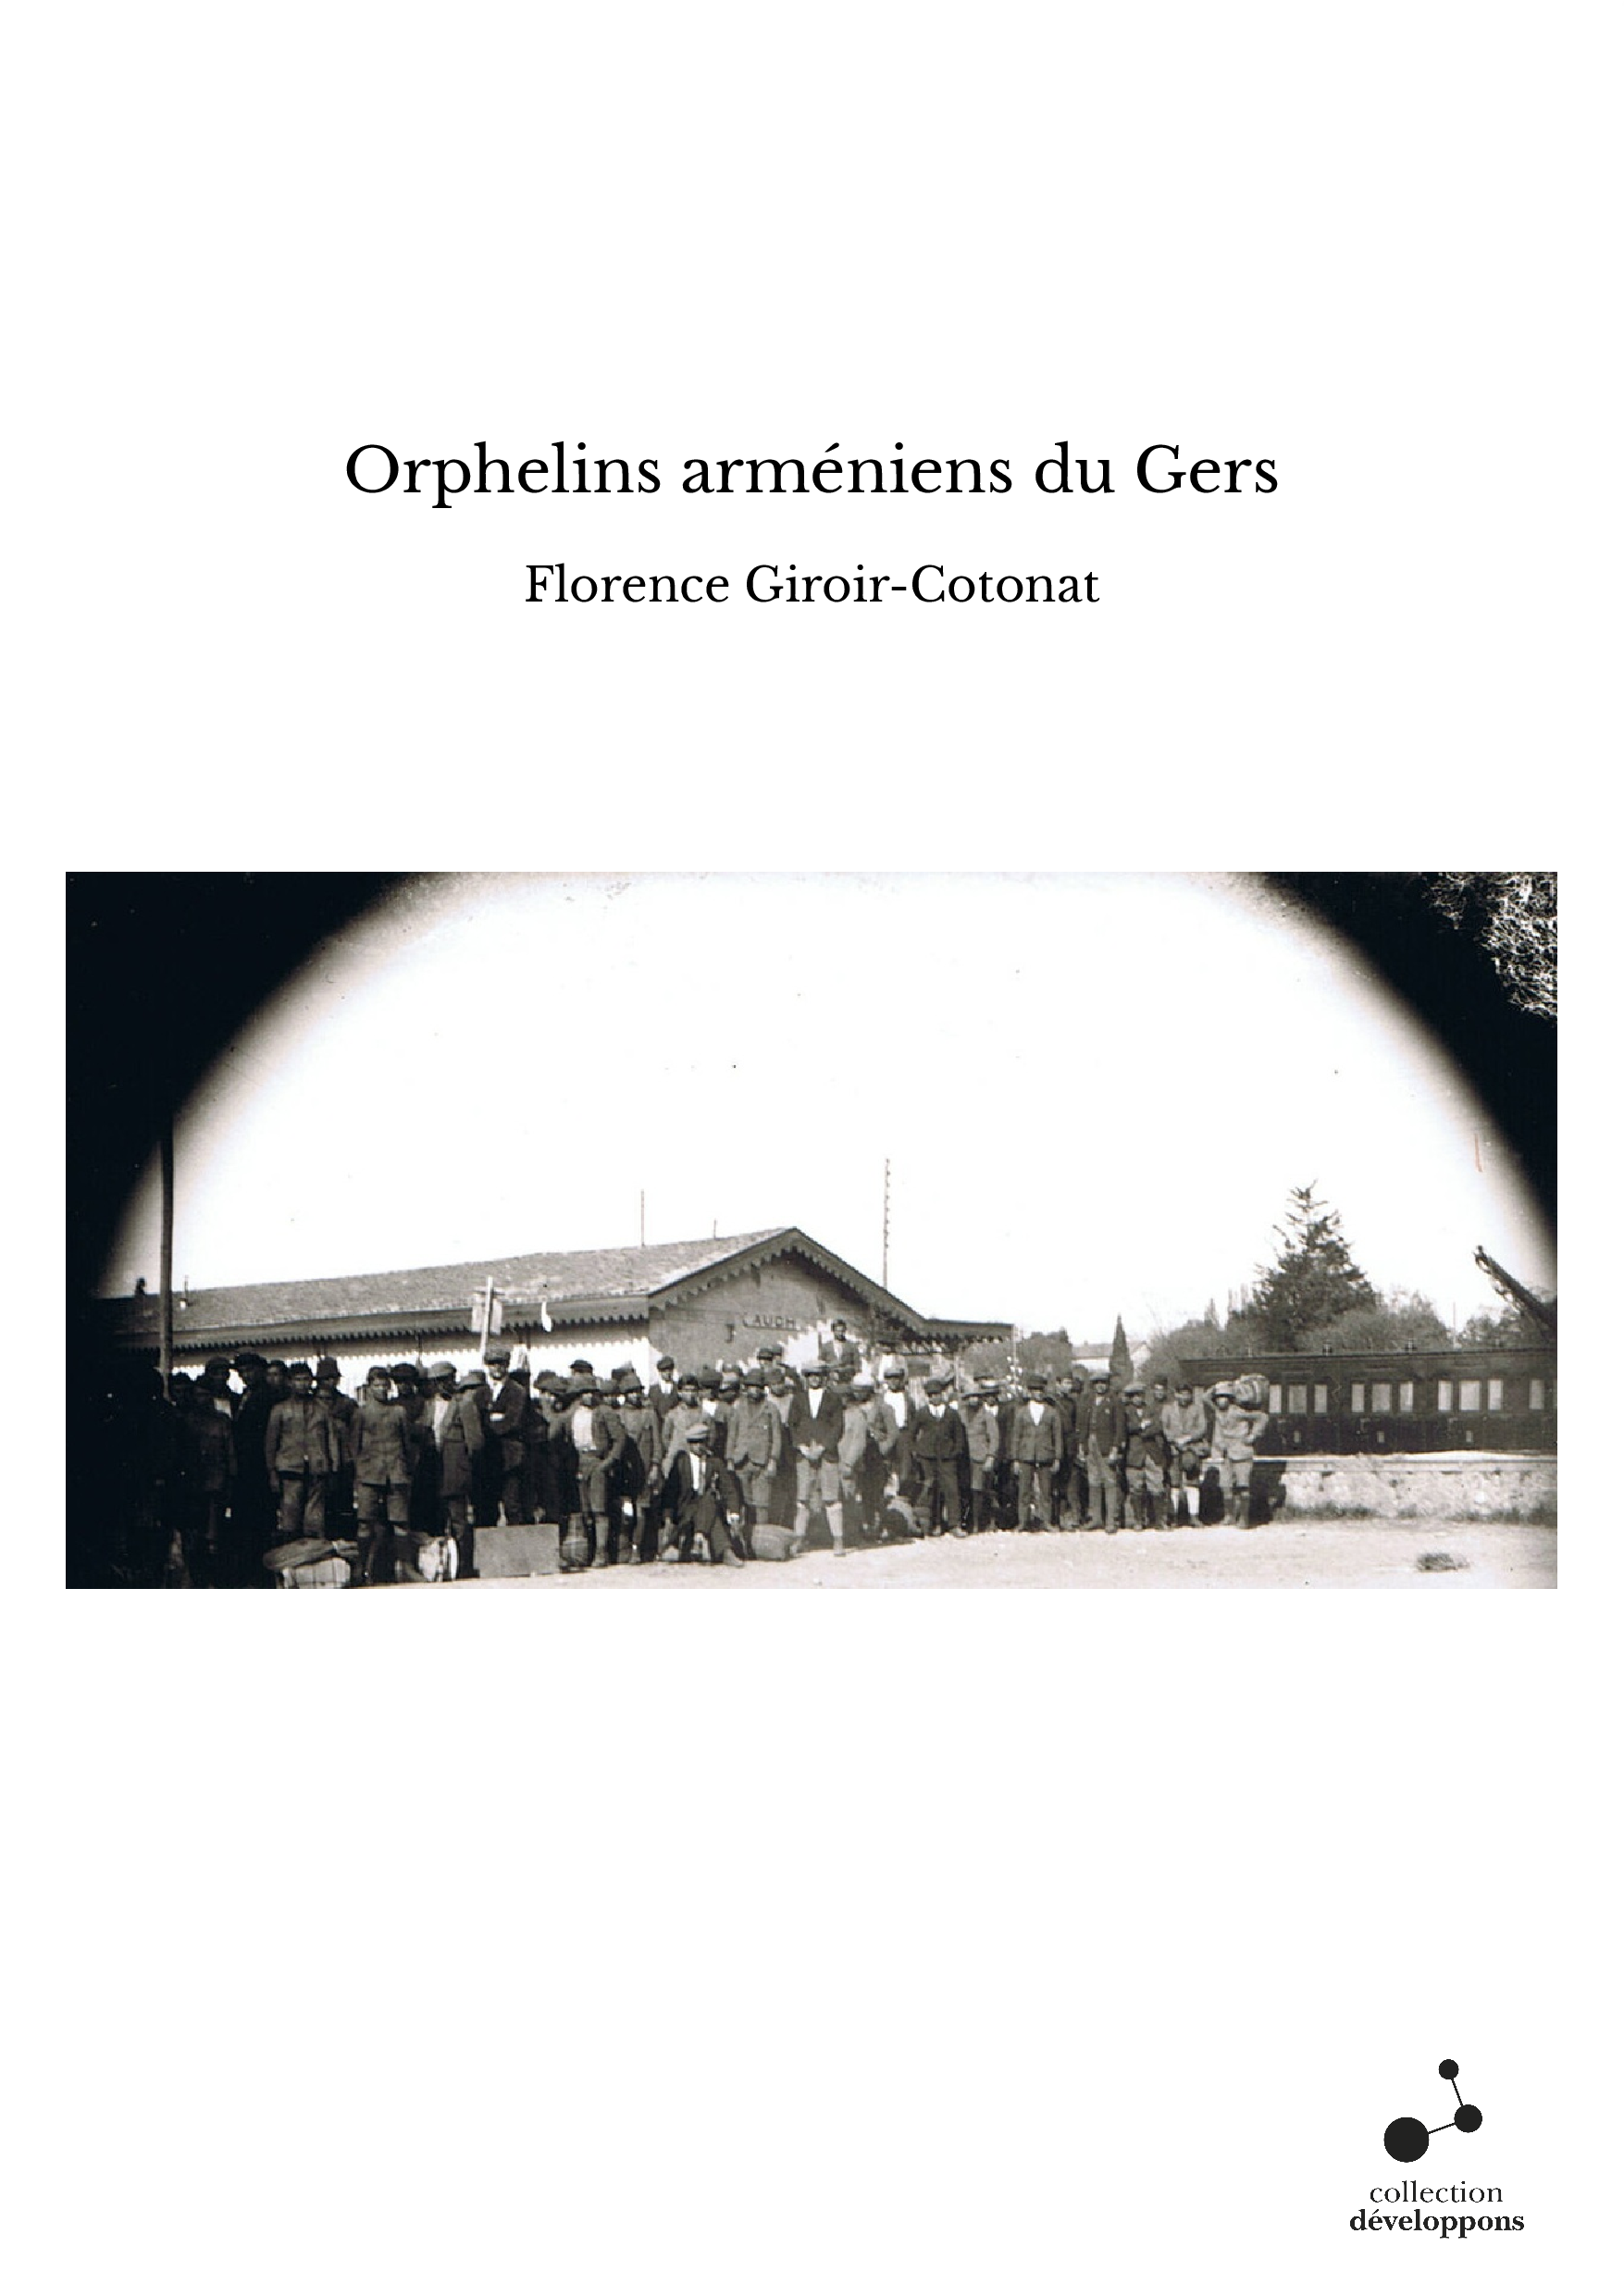 Orphelins arméniens du Gers